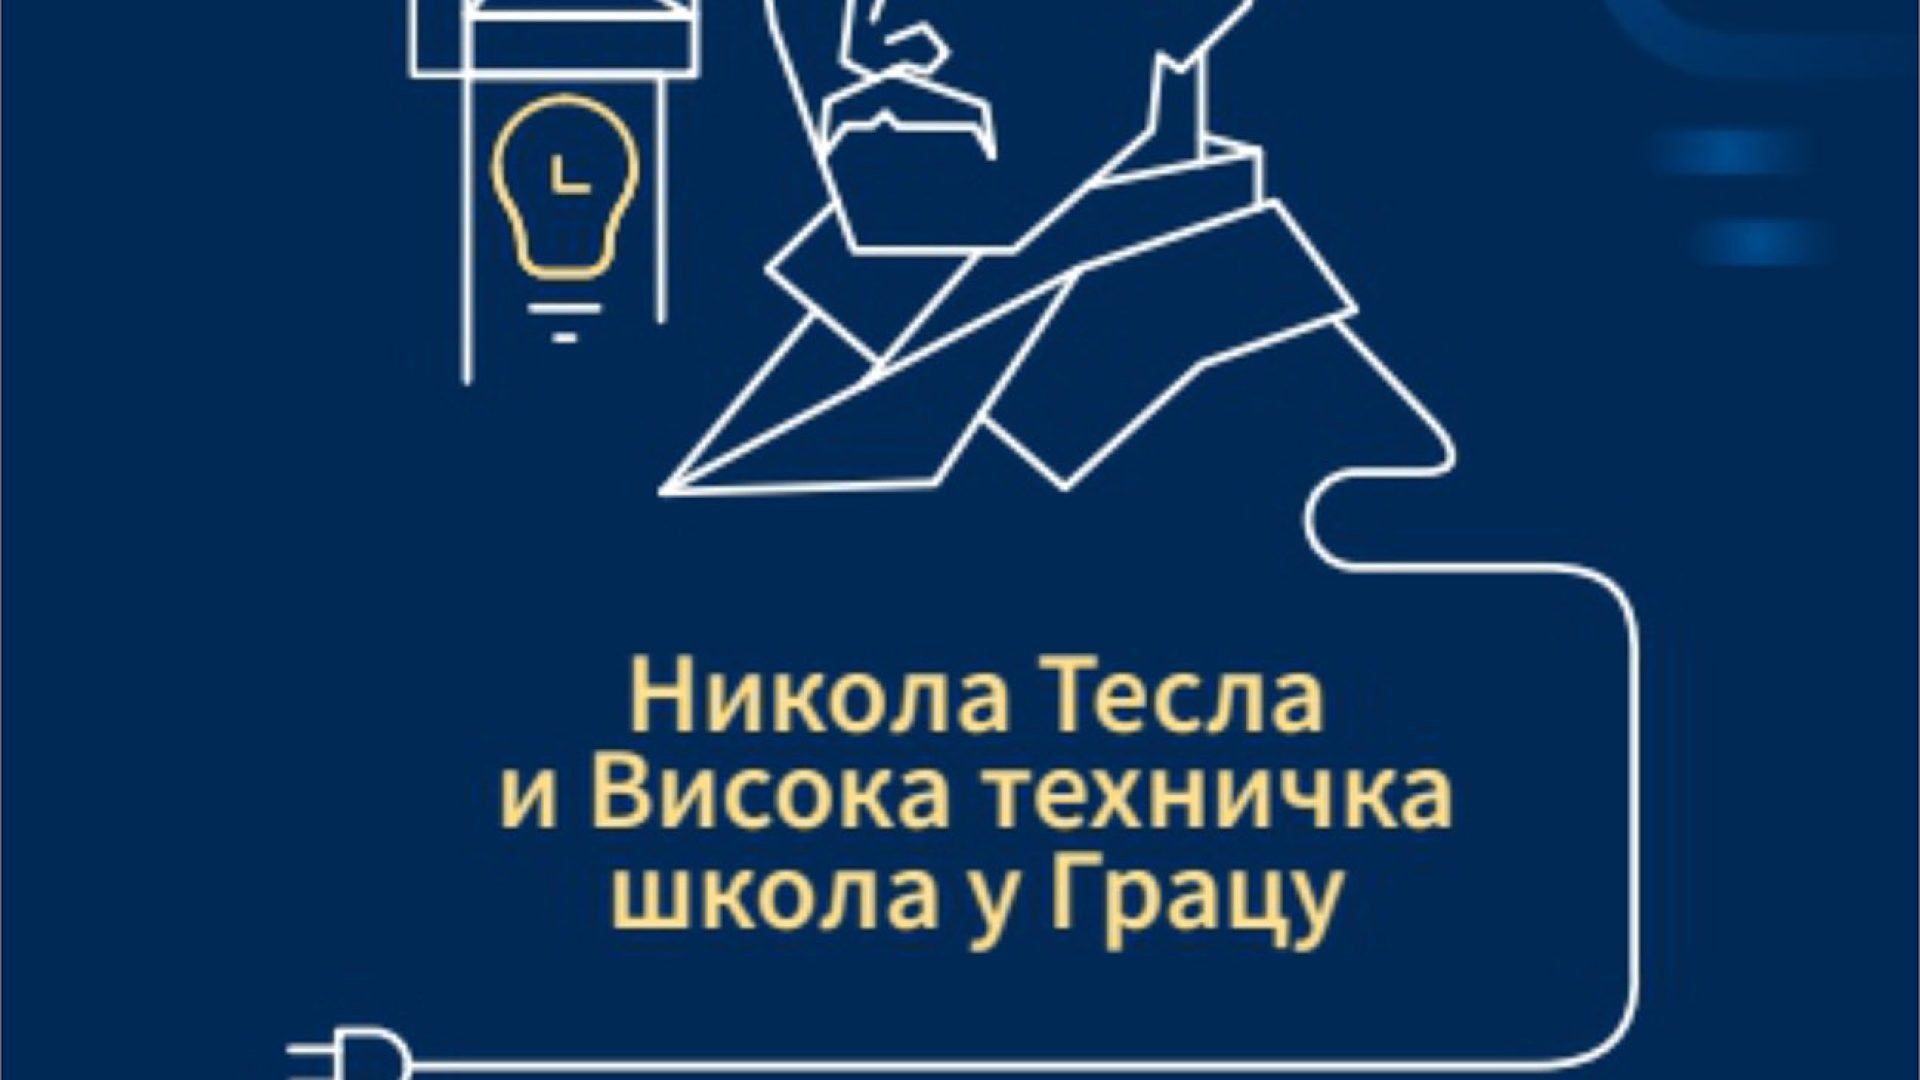 24. 11. Izložba “Nikola Tesla i Visoka tehnička škola u Gracu”